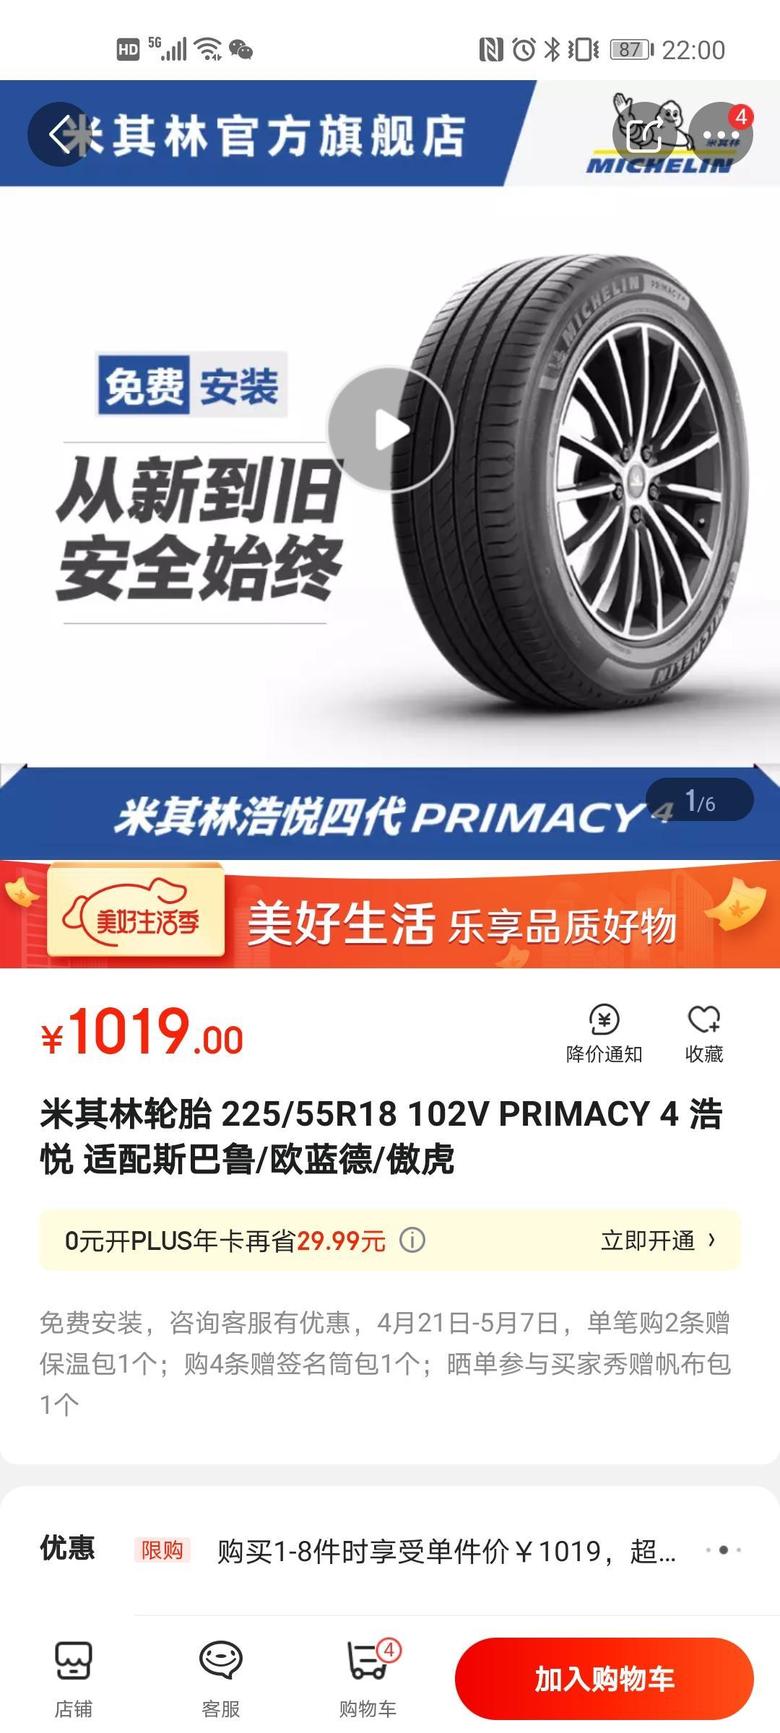 天逸 c5 aircross 我突然发现21款天逸换了米其林225/55/18型号轮胎，这款轮胎京东零售价竟然比原来235/55/18的要贵上150～200元，这是啥原因啊？